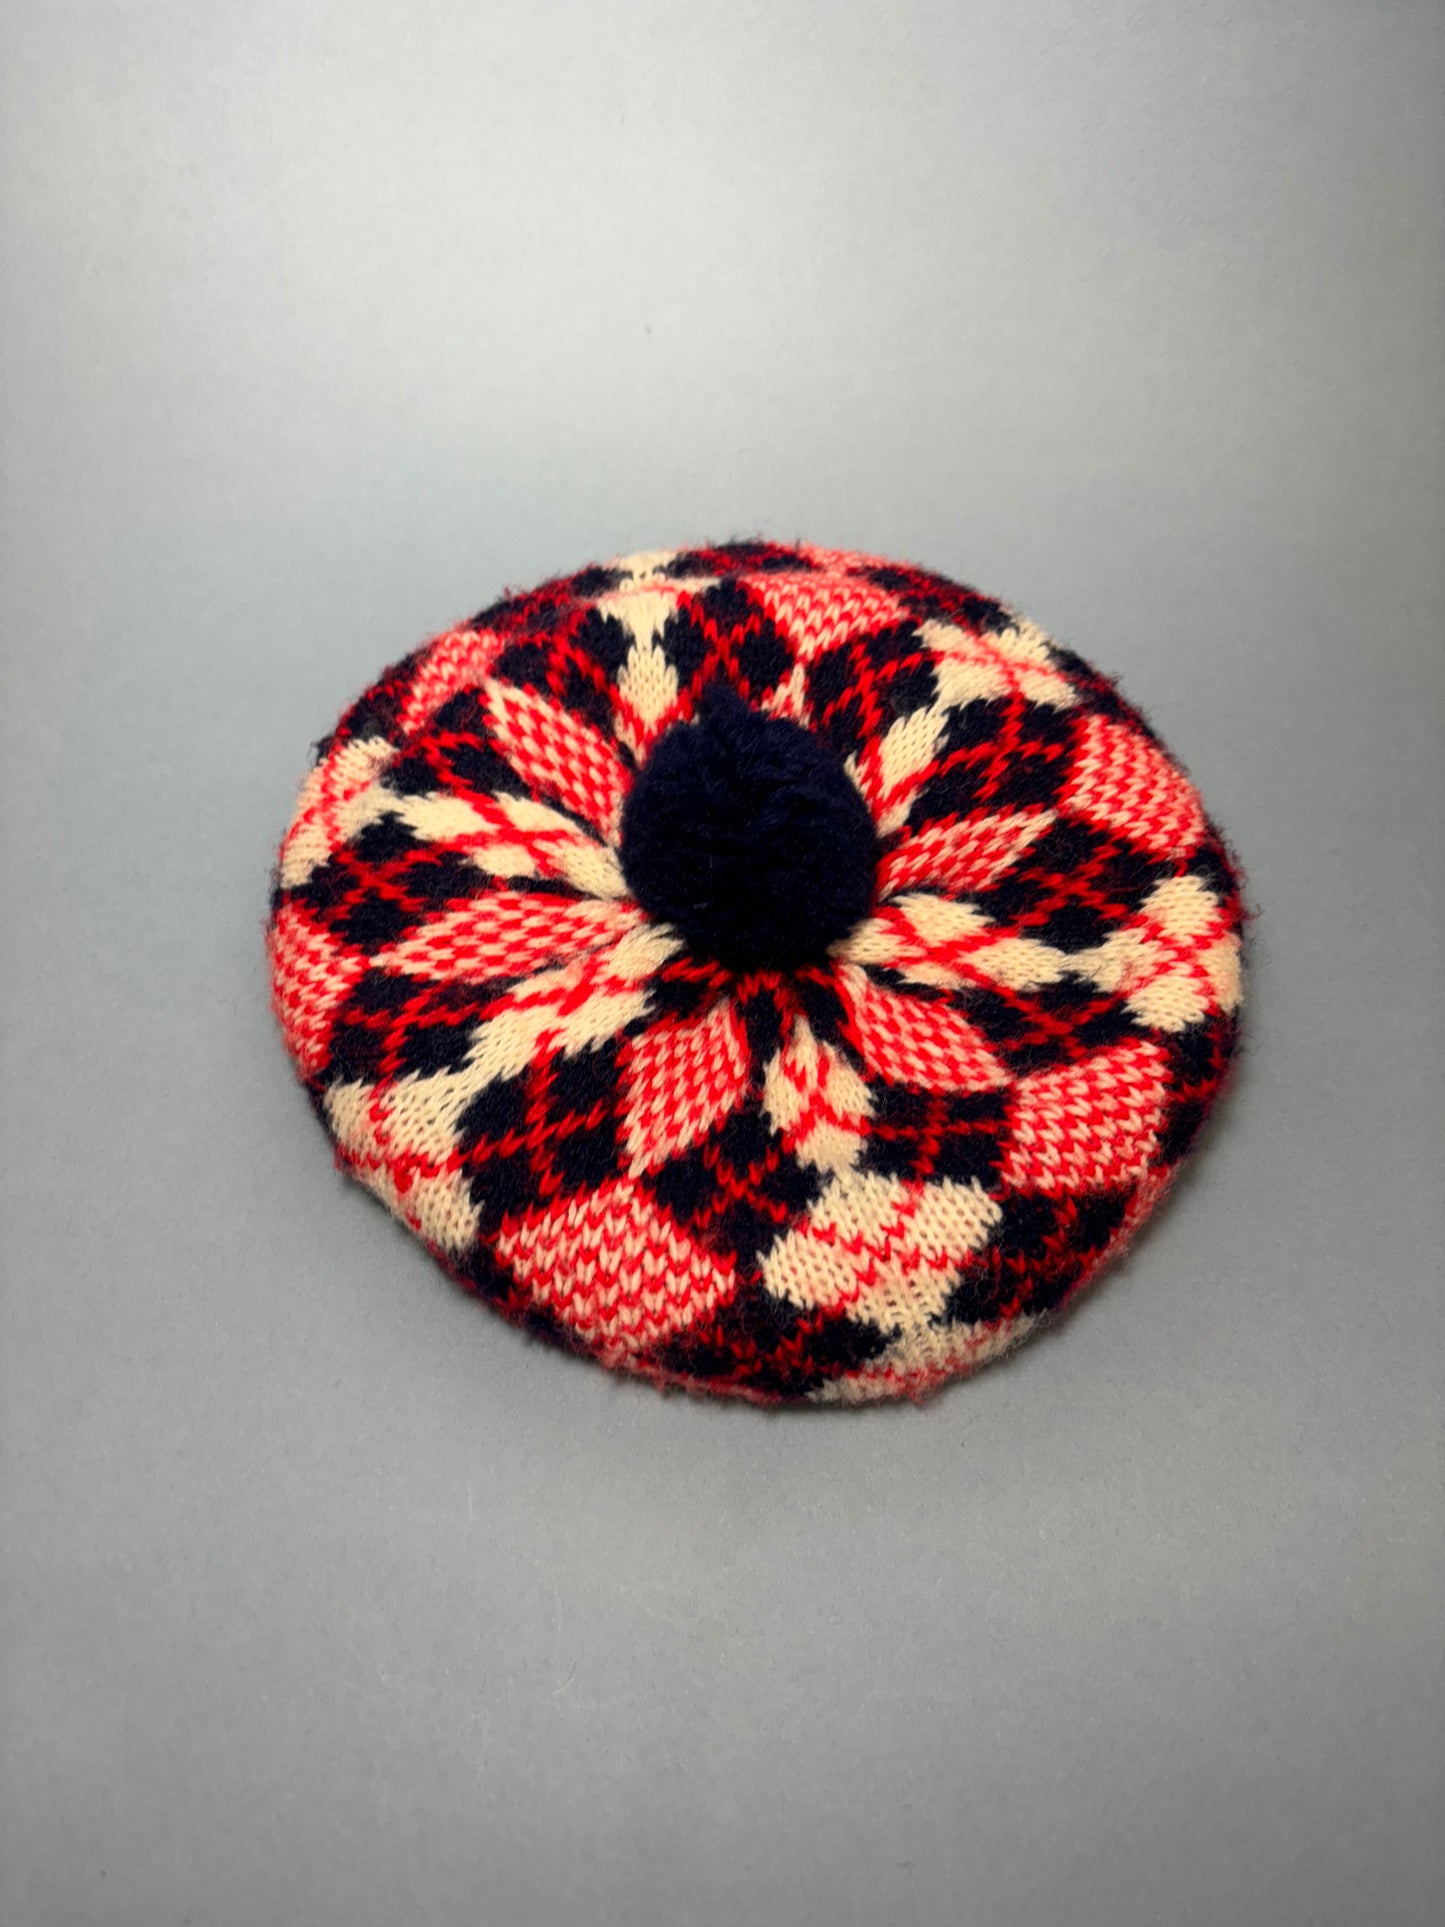 50’s 60's "Marvelous Mrs. Maisel" Red, Navy & White Argyle Winter Hat